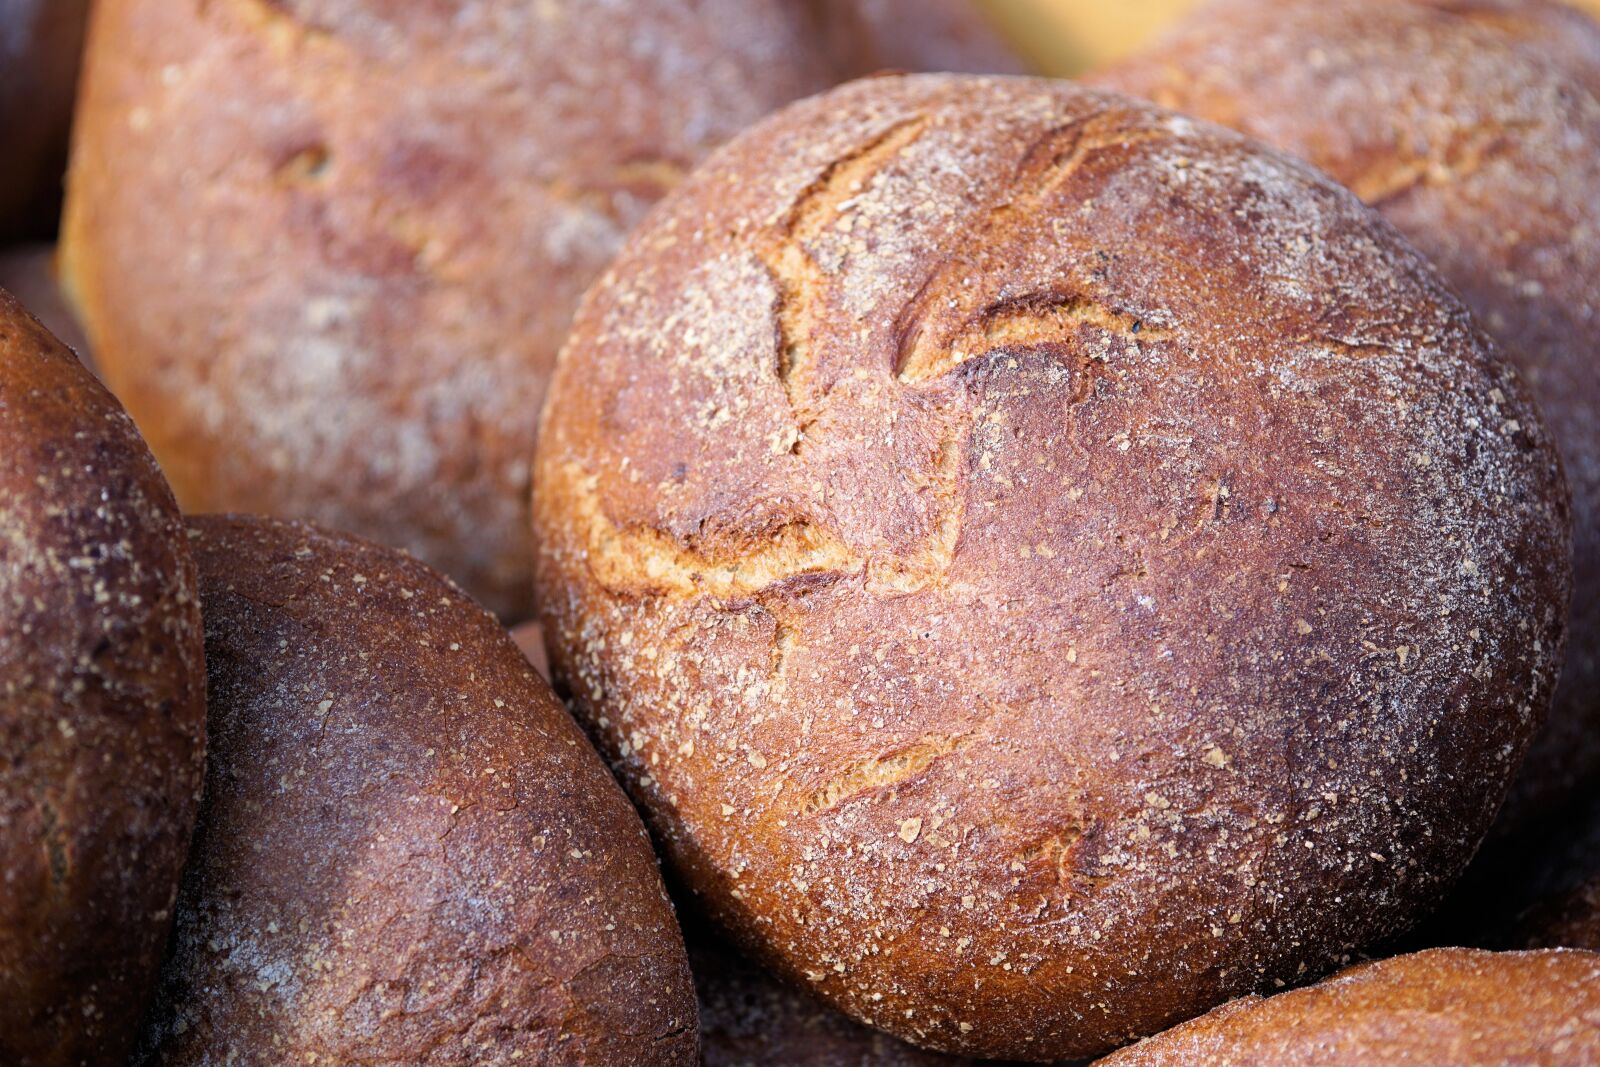 Sony a6000 sample photo. Bread, flour, bake photography